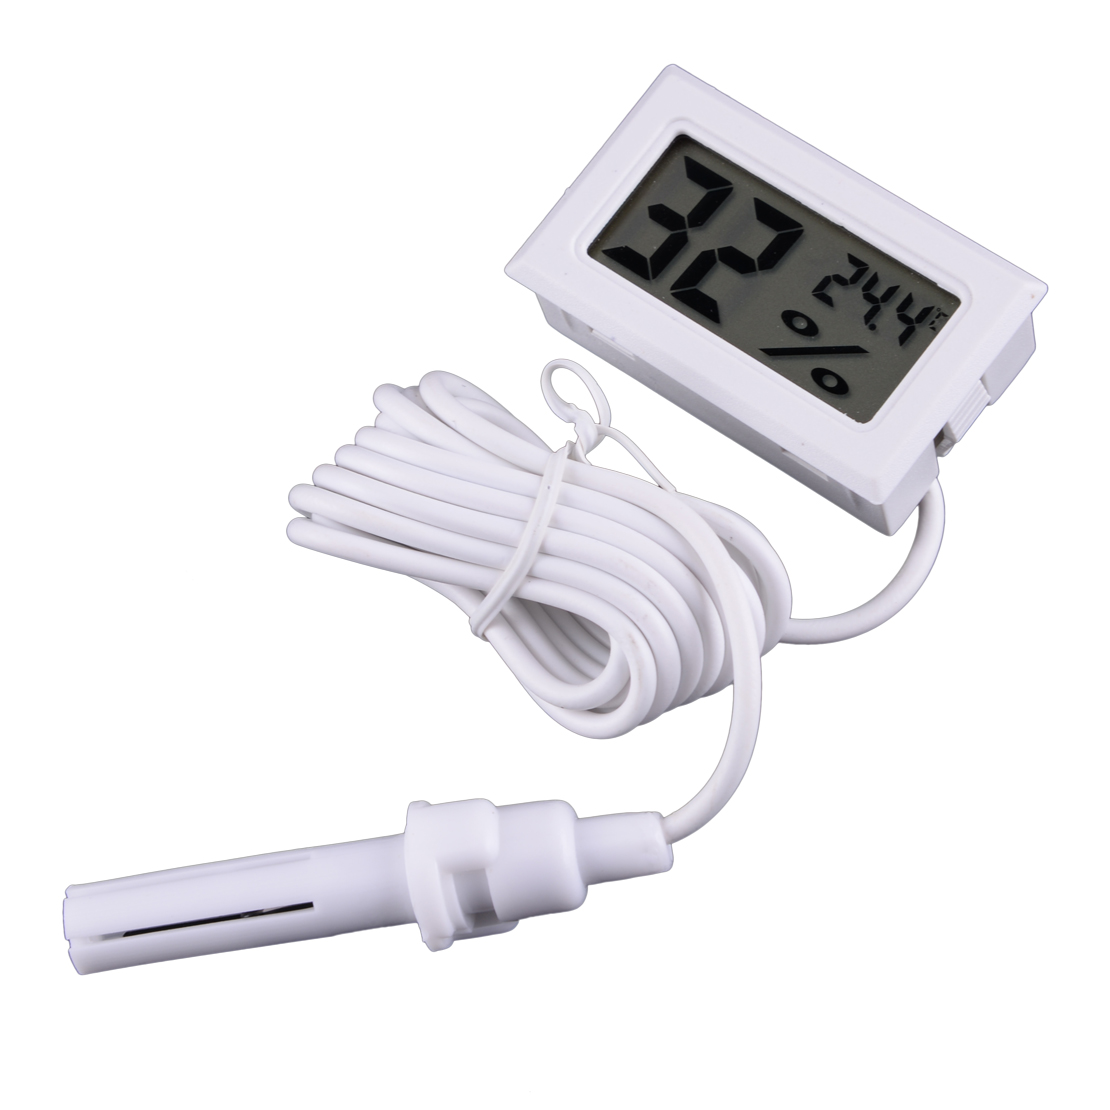 Schwarz ARCELI 1 STÜCKE 2-in-1 Digital LCD Embedded Thermometer Hygrometer mit Externe für Reptil Inkubator Aquarium Geflügel